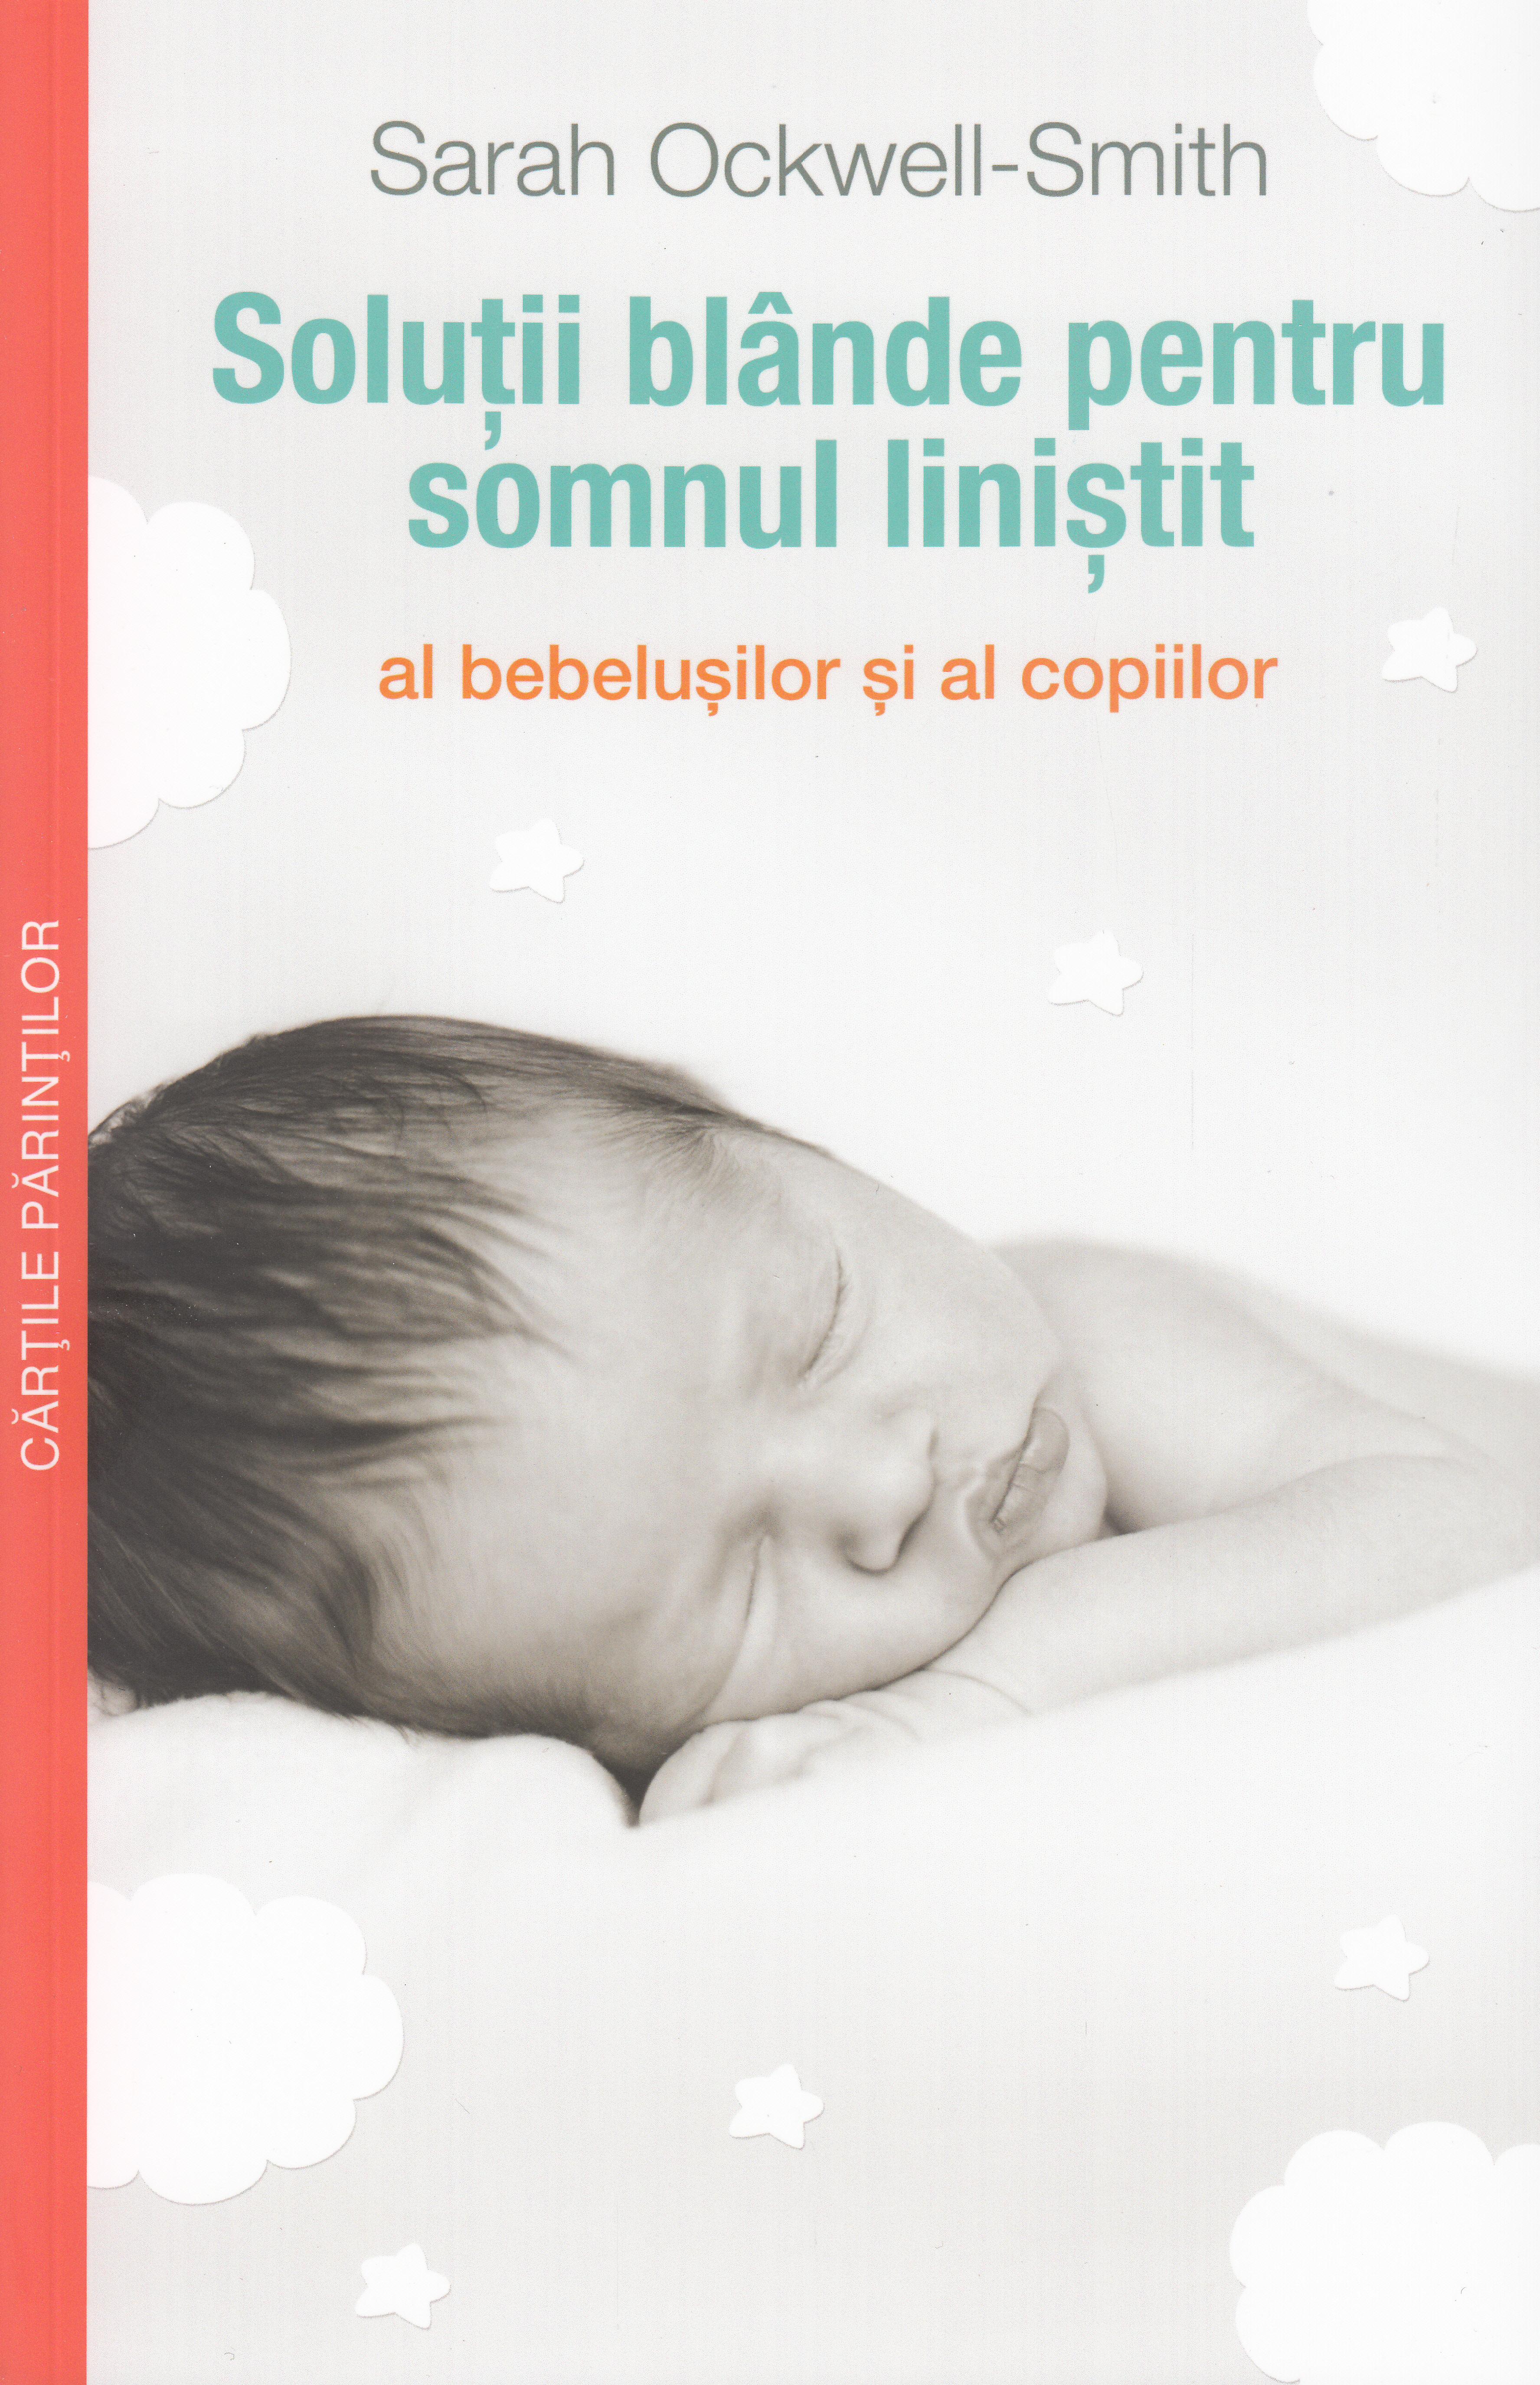 Solutii blande pentru somnul linistit al bebelusilor - Sarah Ockwell Smith